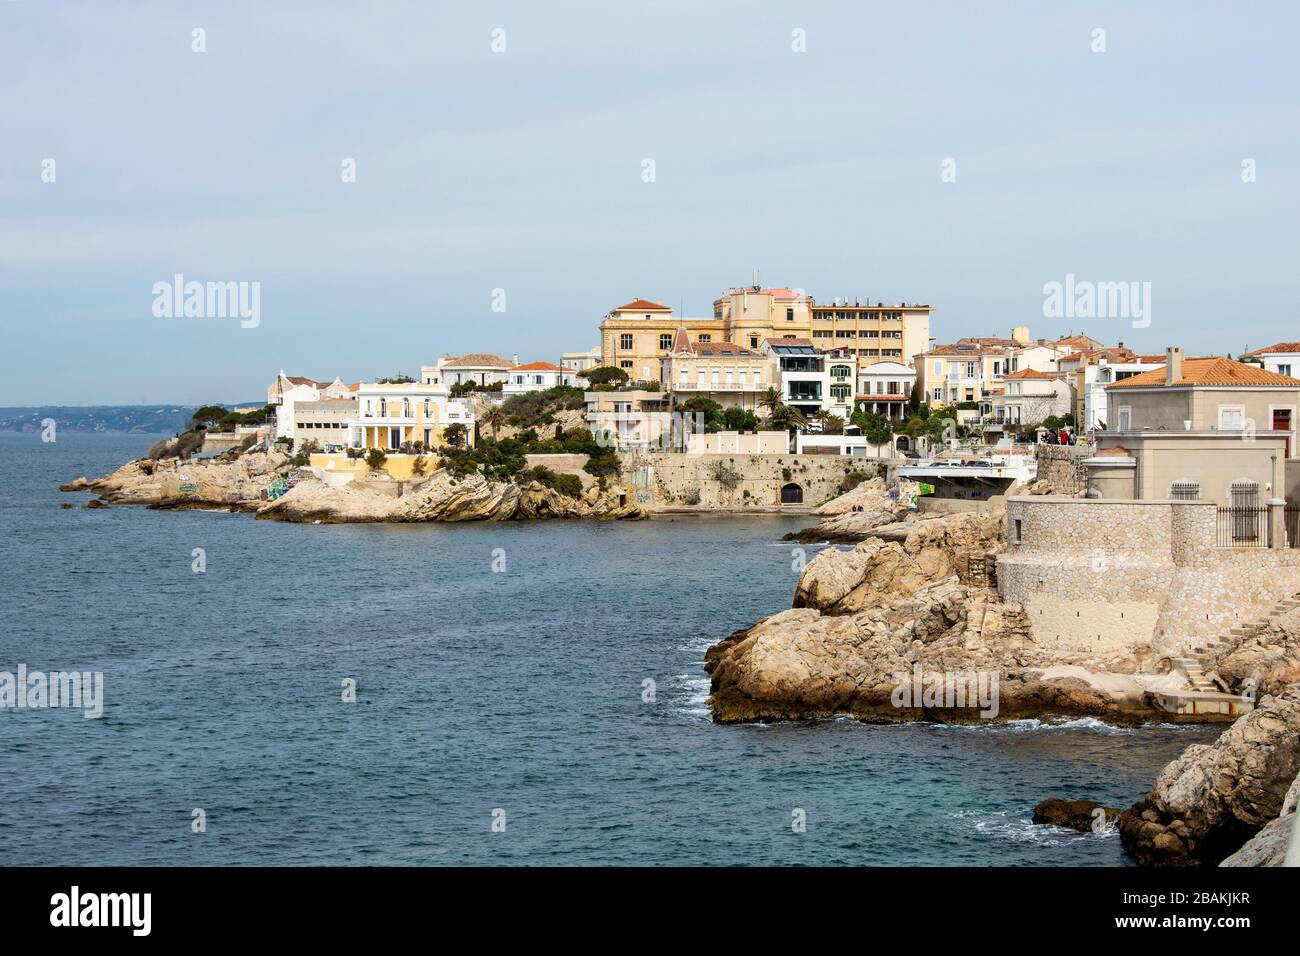 Villaggio costiero sul mediterraneo che si avvicina a la Spezia Foto Stock